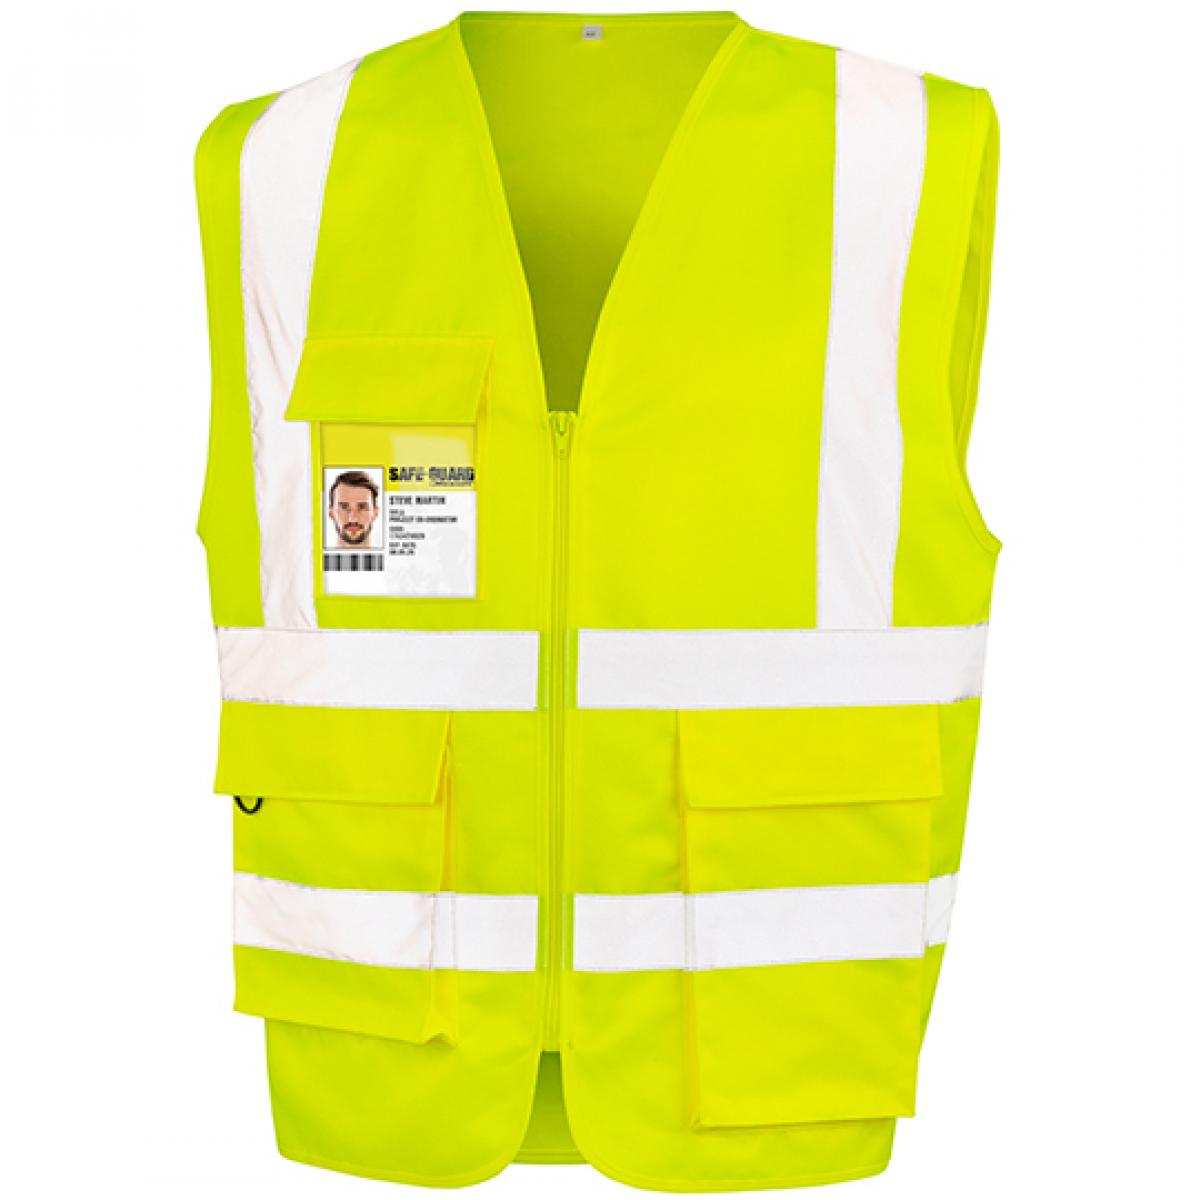 Hersteller: Result Safe-Guard Herstellernummer: R477X Artikelbezeichnung: Heavy Duty Polycotton Security Vest - Sicherheitsweste Farbe: Fluorescent Yellow